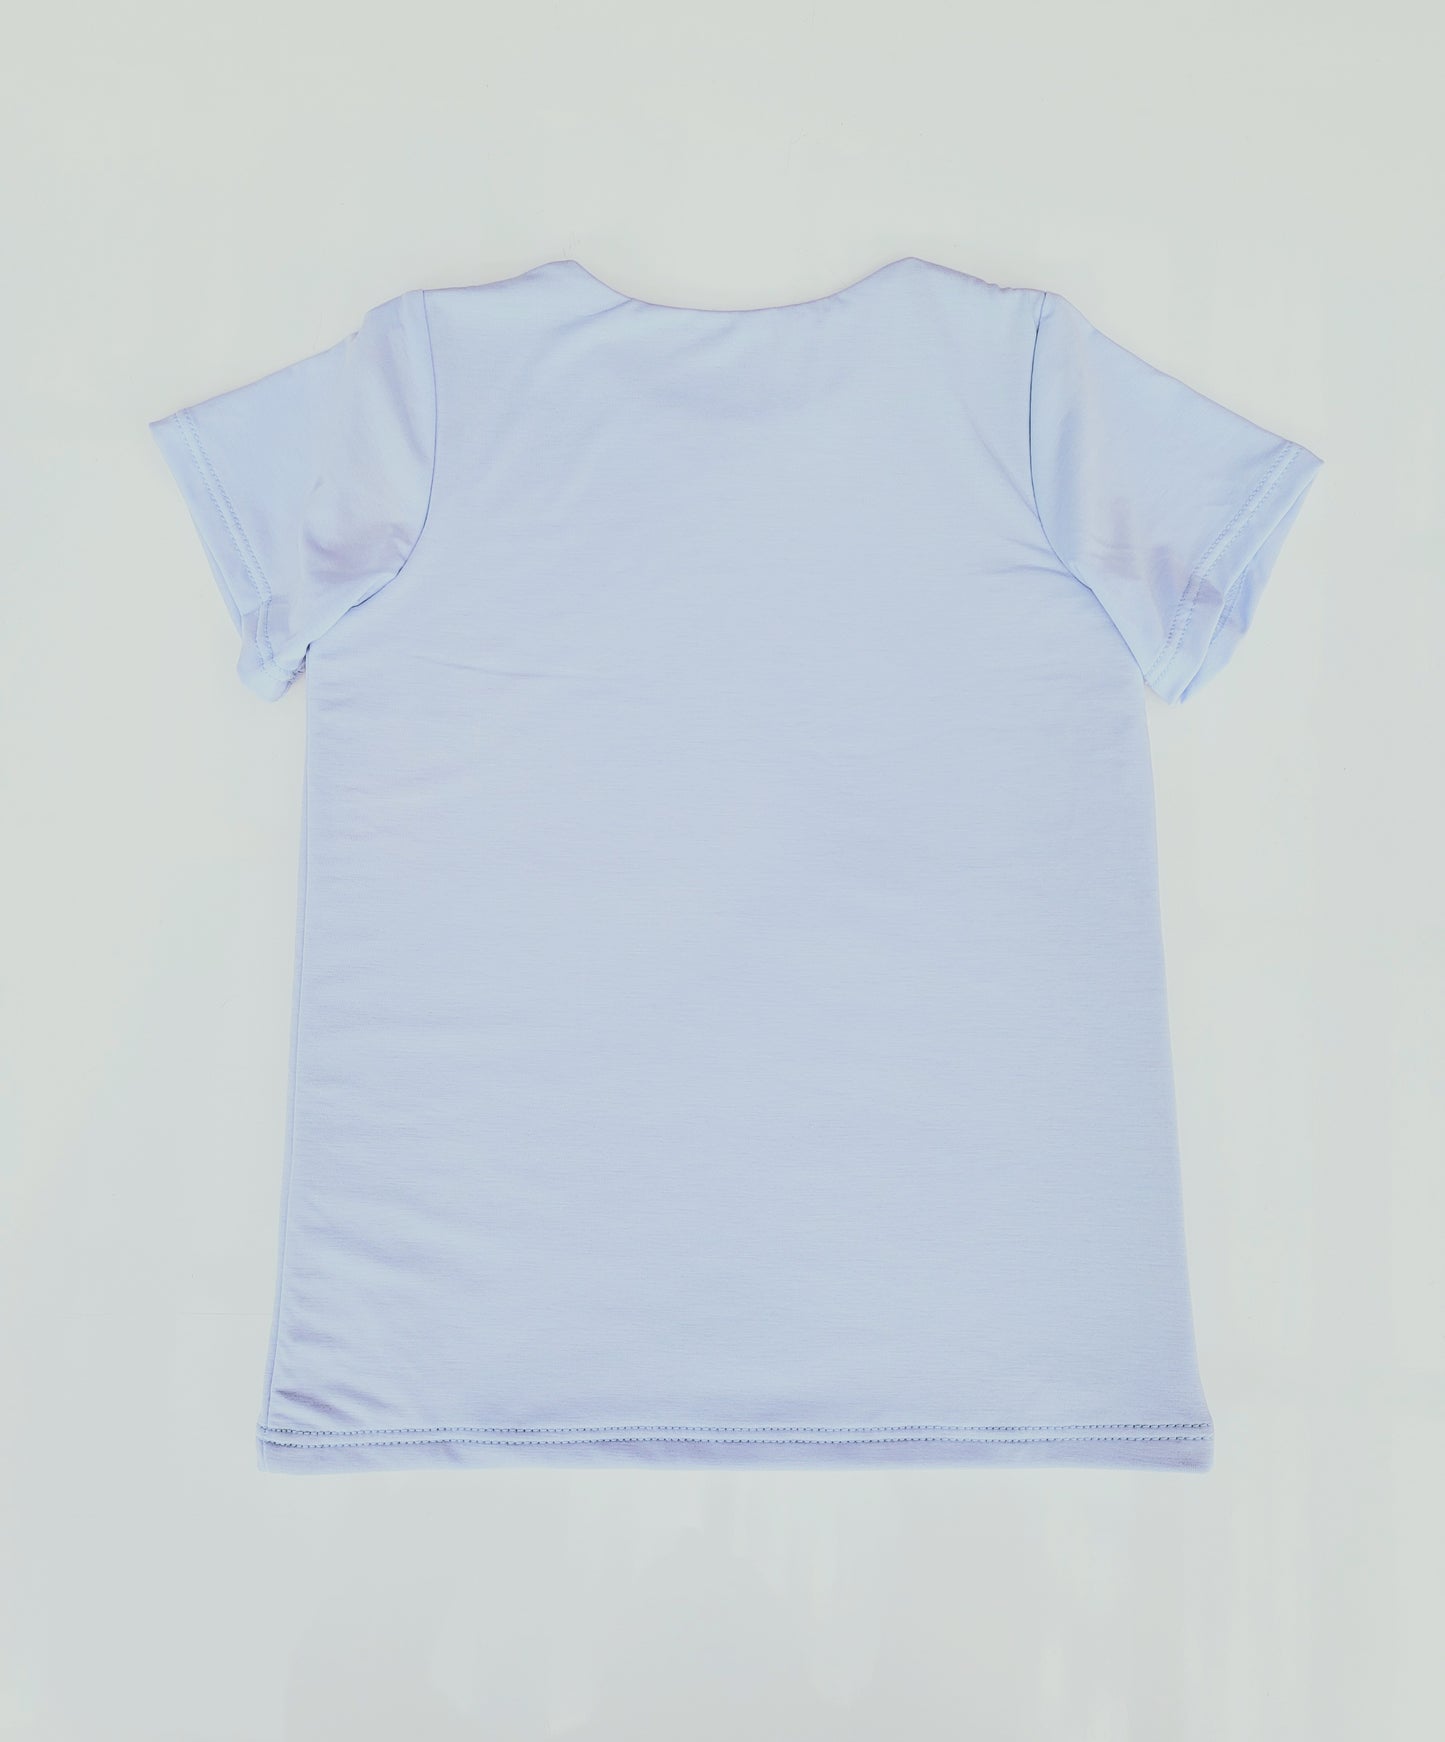 Eve Fleur - EMF Shielding Kids Tee Shirt - Sky Blue - Schild